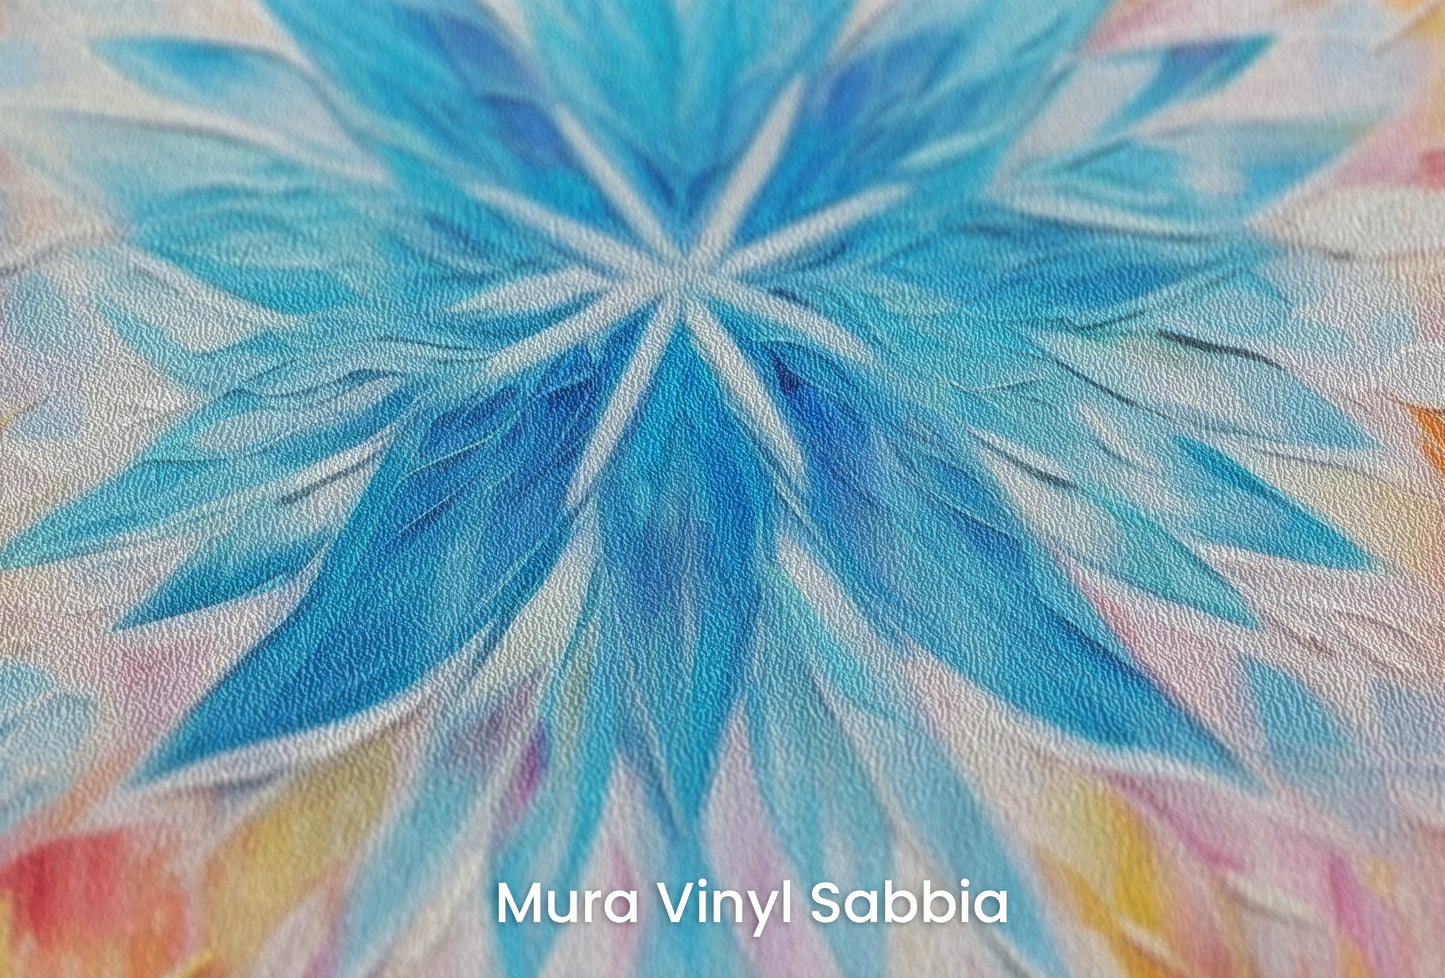 Zbliżenie na artystyczną fototapetę o nazwie Fire and Ice na podłożu Mura Vinyl Sabbia struktura grubego ziarna piasku.